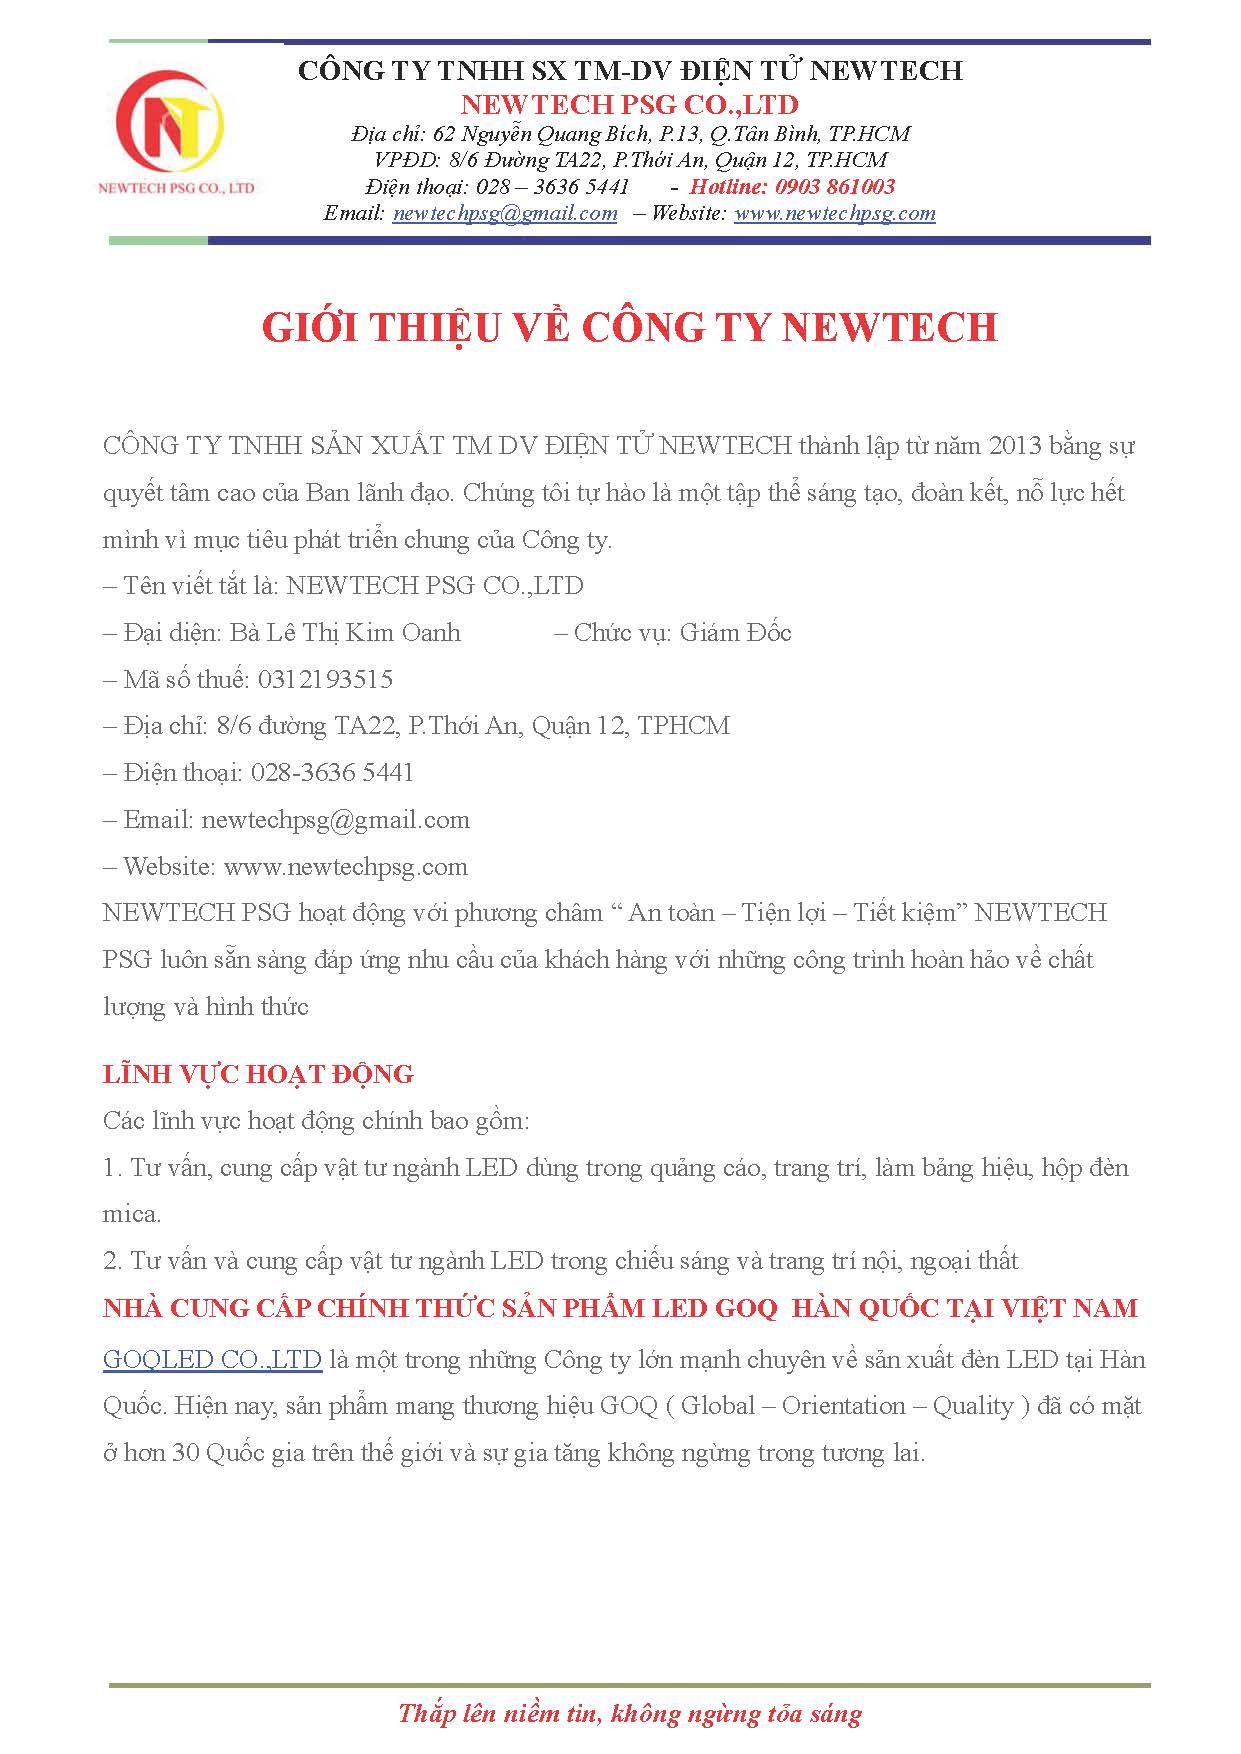 GIOI_THIEU_CTY_NEWTECH_Page_1